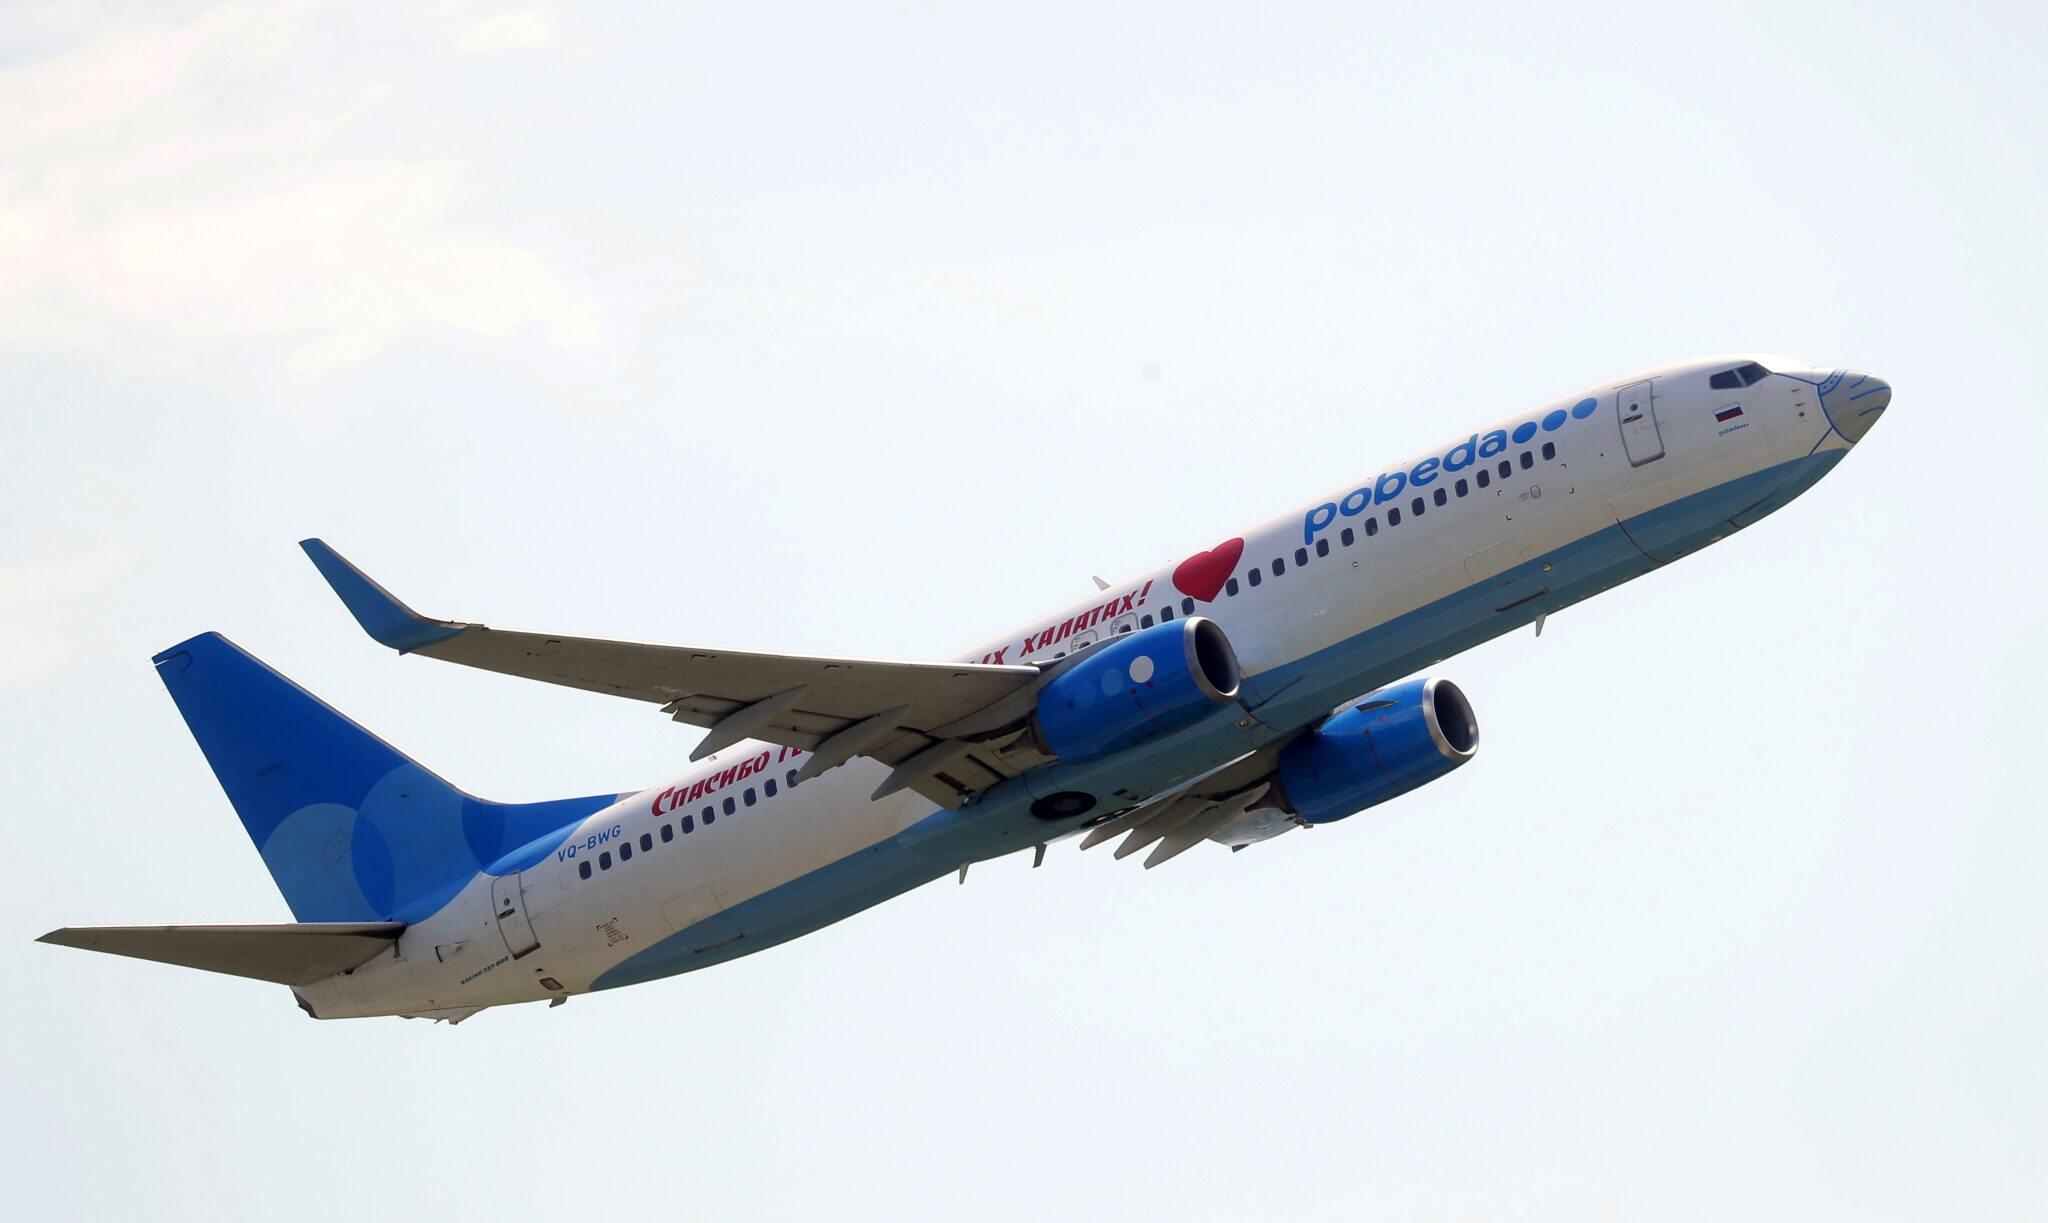 Самолет авиакомпании "Победа" взлетает во Внуково. Фото MAXIM SHIPENKOV/EPA/Leta/Scanpix